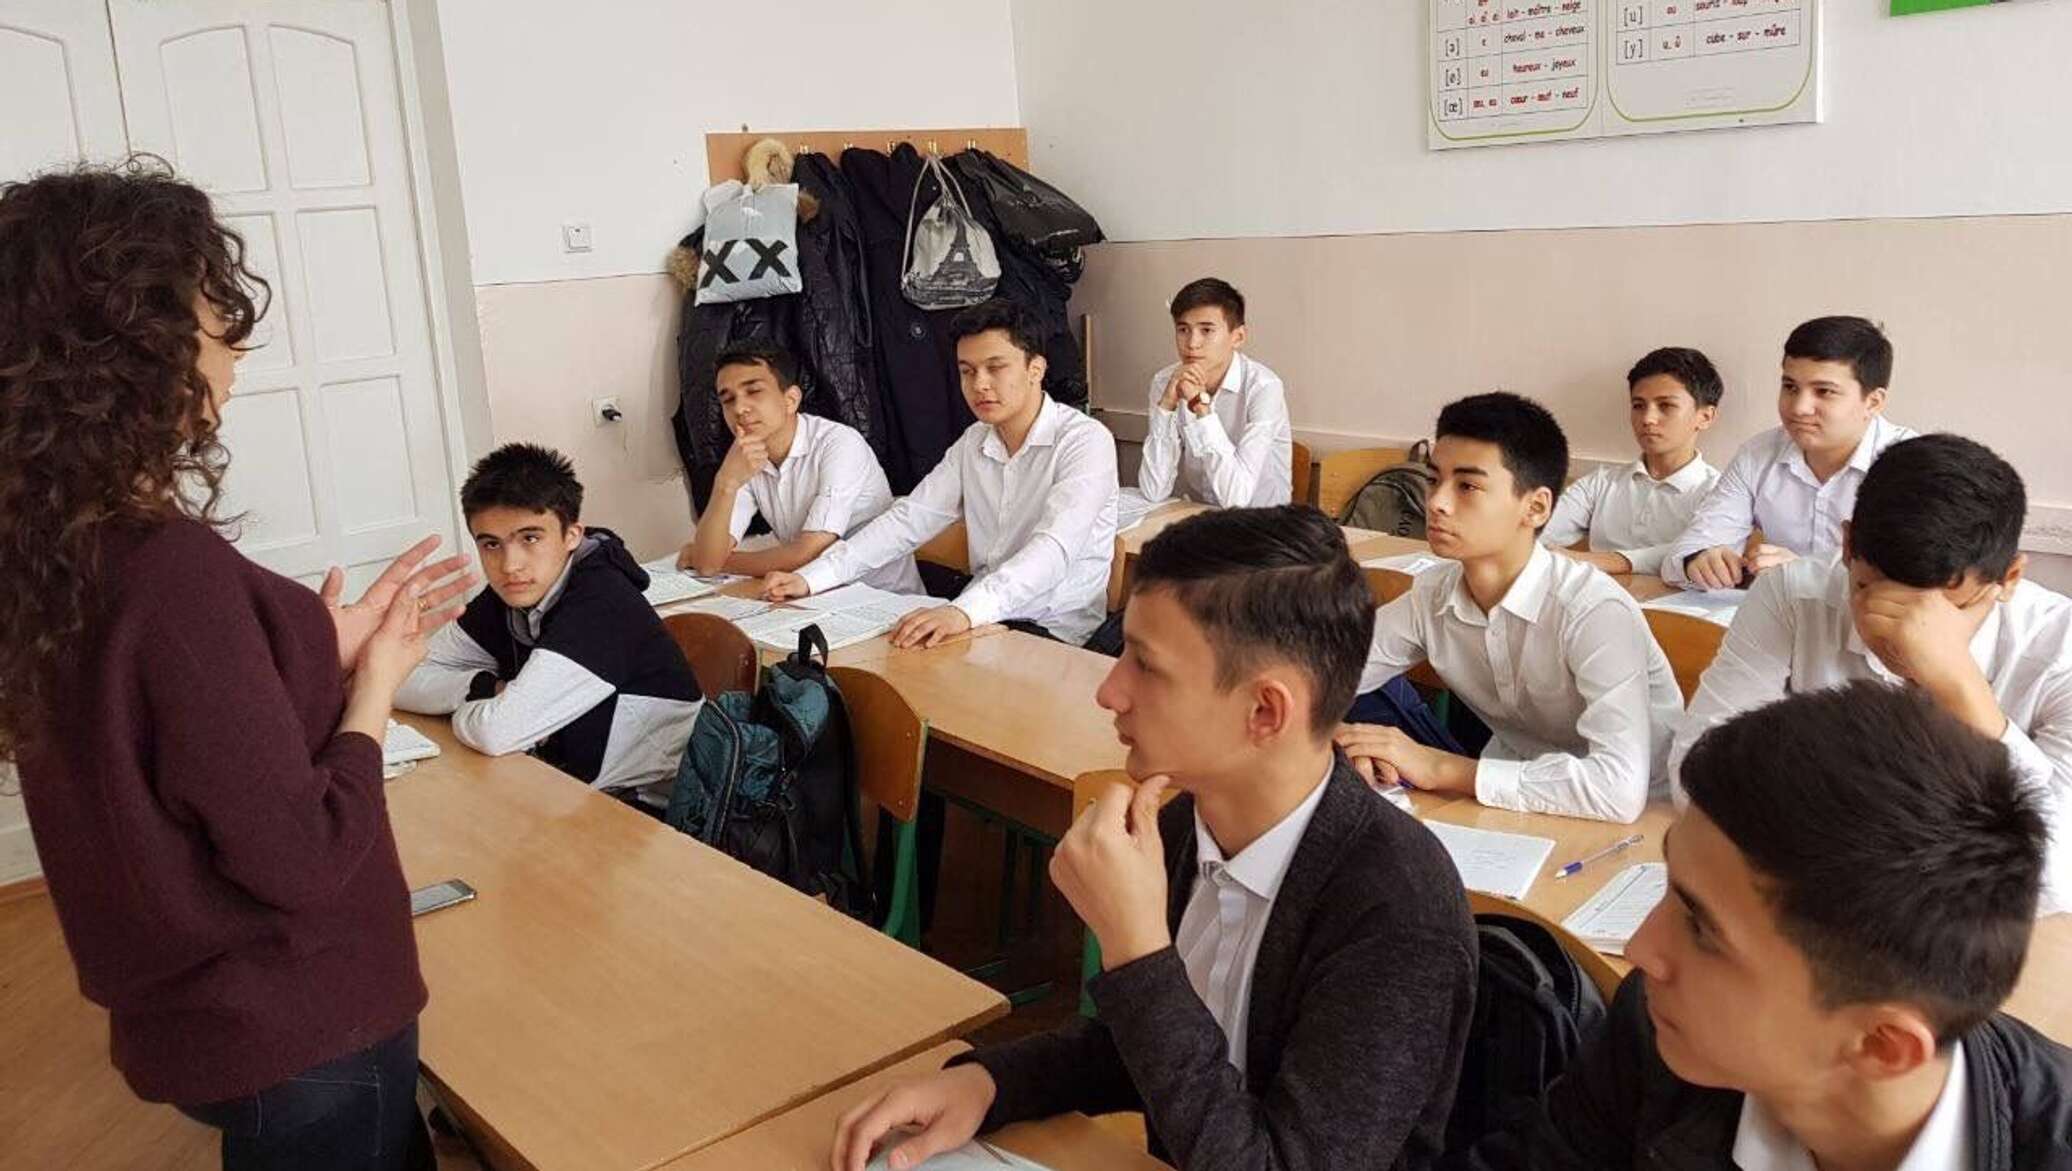 Узбекского школьник. Школа Узбекистан. Узбекские ученики. Узбекские школьники. Узбекские дети в школе.